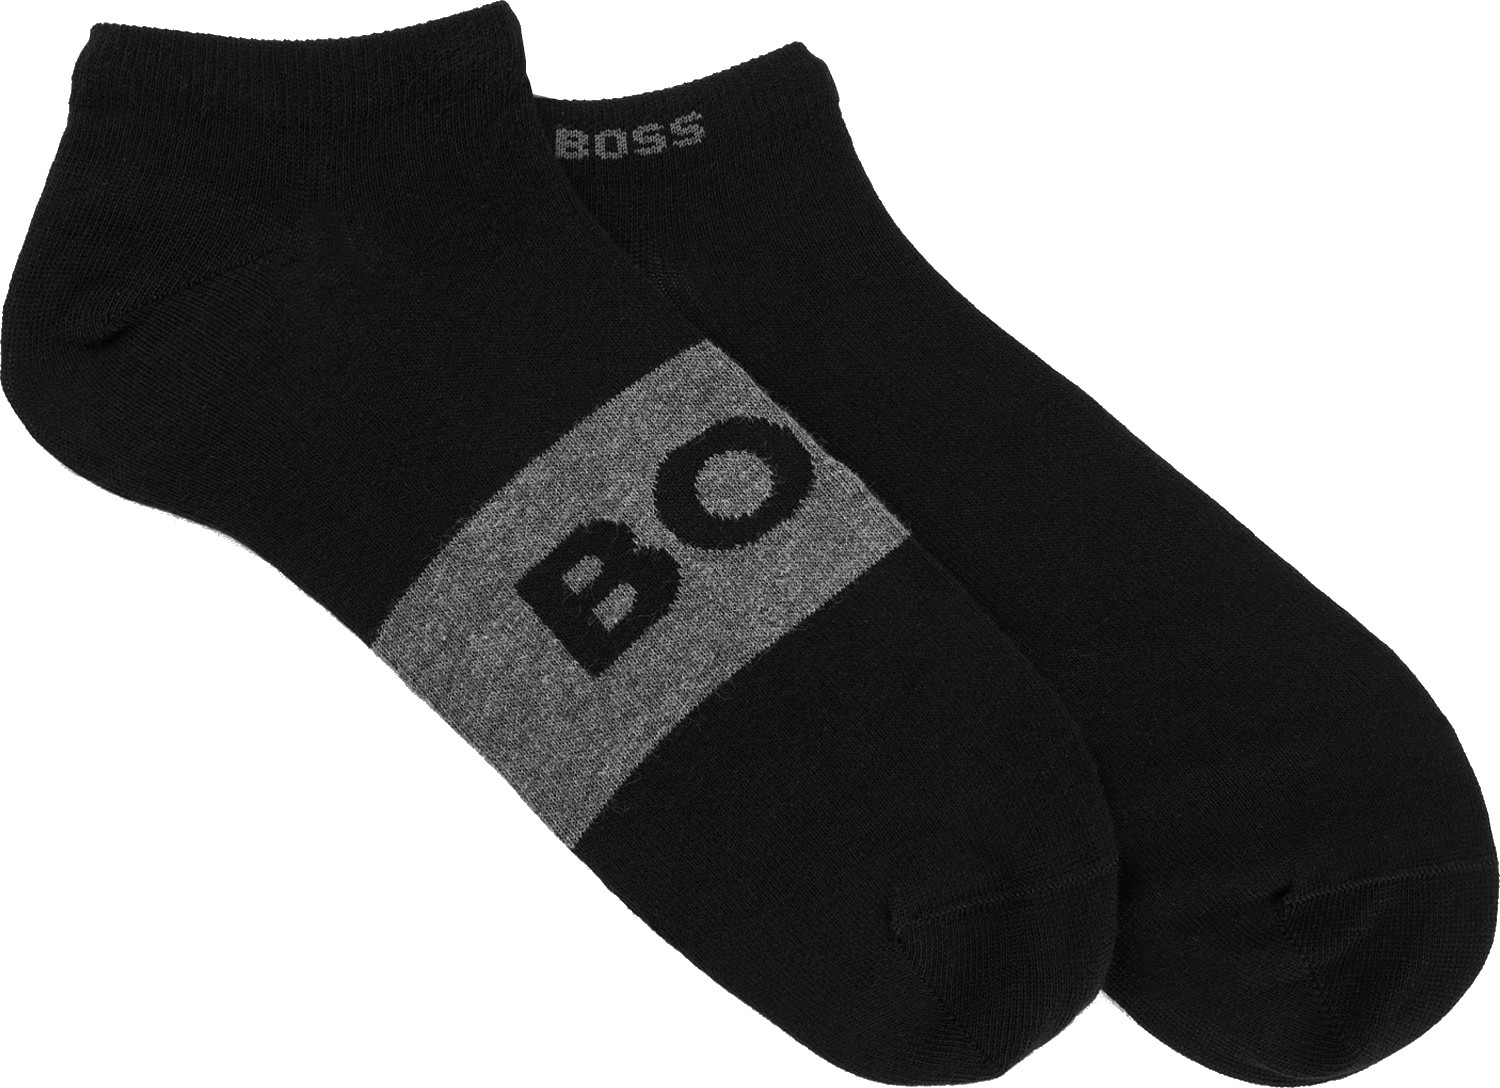 Hugo Boss 2 PACK - pánské ponožky BOSS 50469720-001 39-42